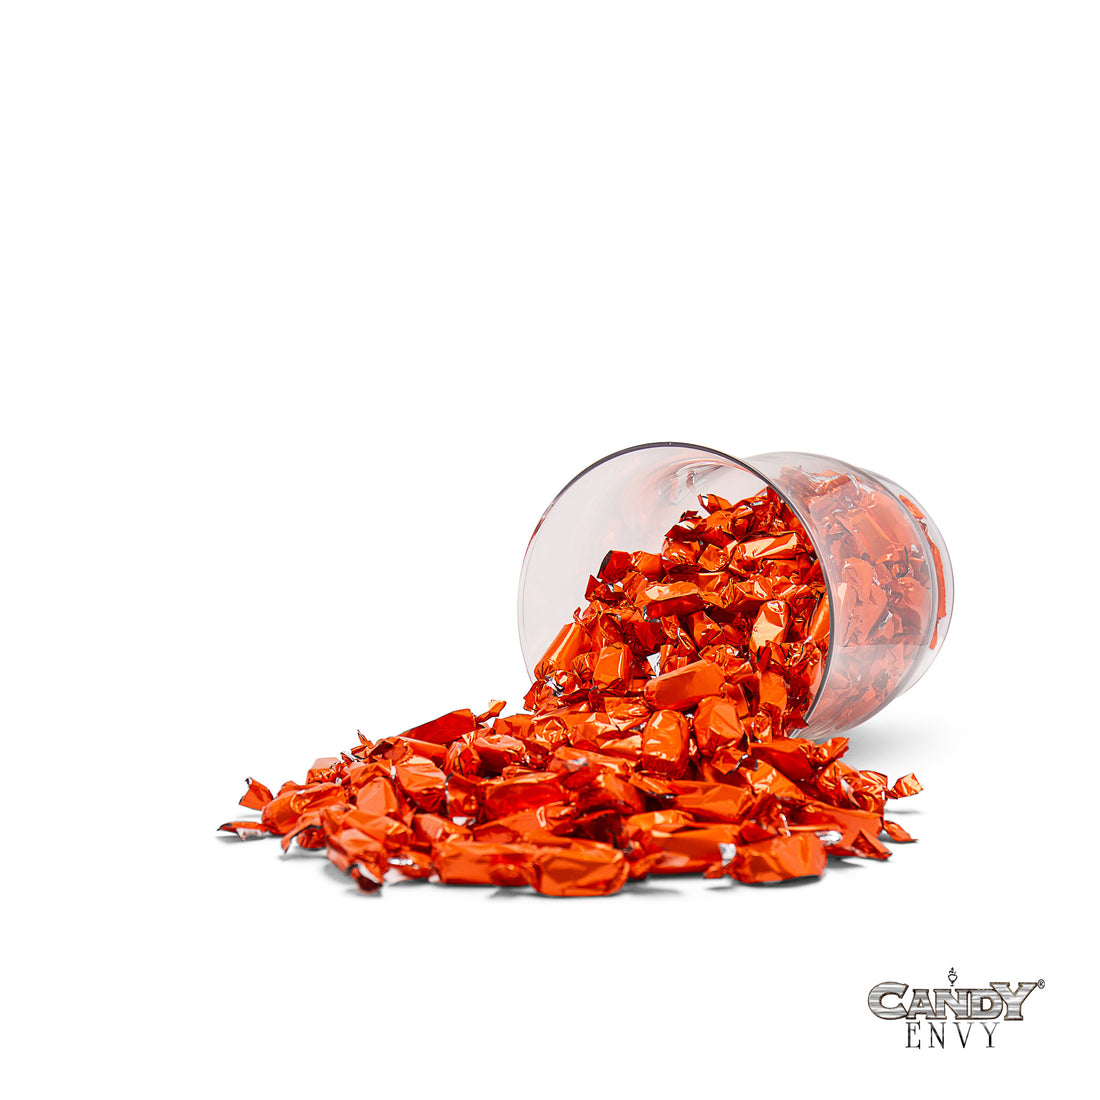 Orange Foil-Wrapped Caramels - 2 lb Bag